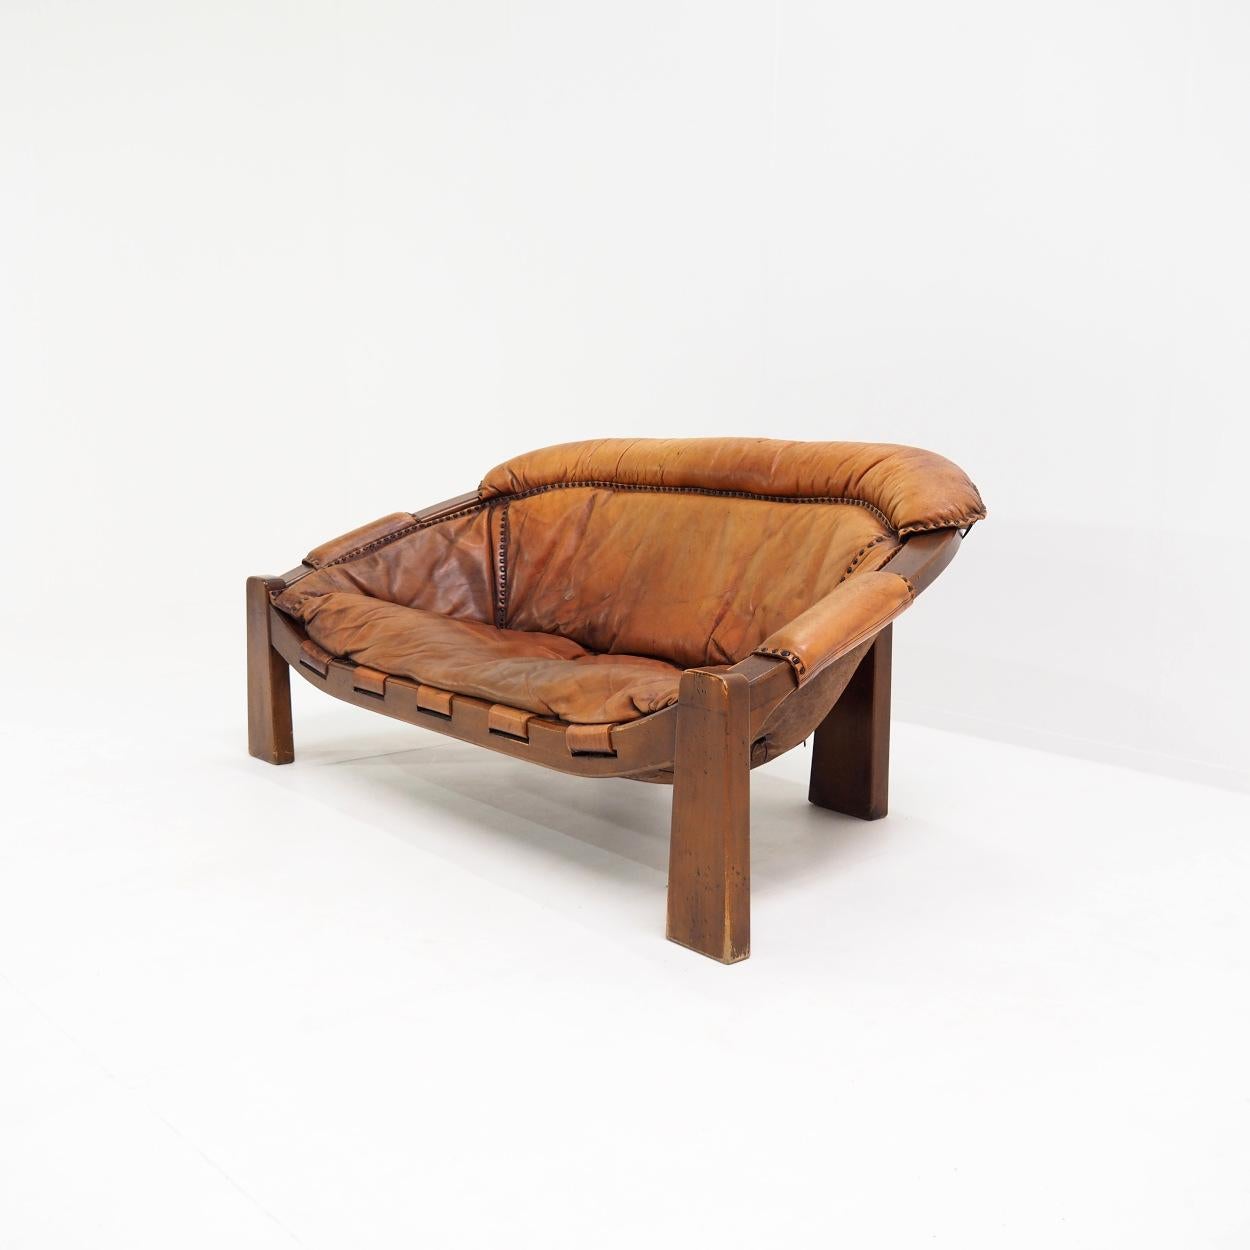 Schönes zweisitziges Sofa im brasilianischen brutalistischen Stil der 1970er Jahre.

Das Sofa wurde von dem italienischen Designer Luciano Frigerio entworfen und in seinem Studio hergestellt und montiert.

Der Sitz hat ein unglaublich schönes